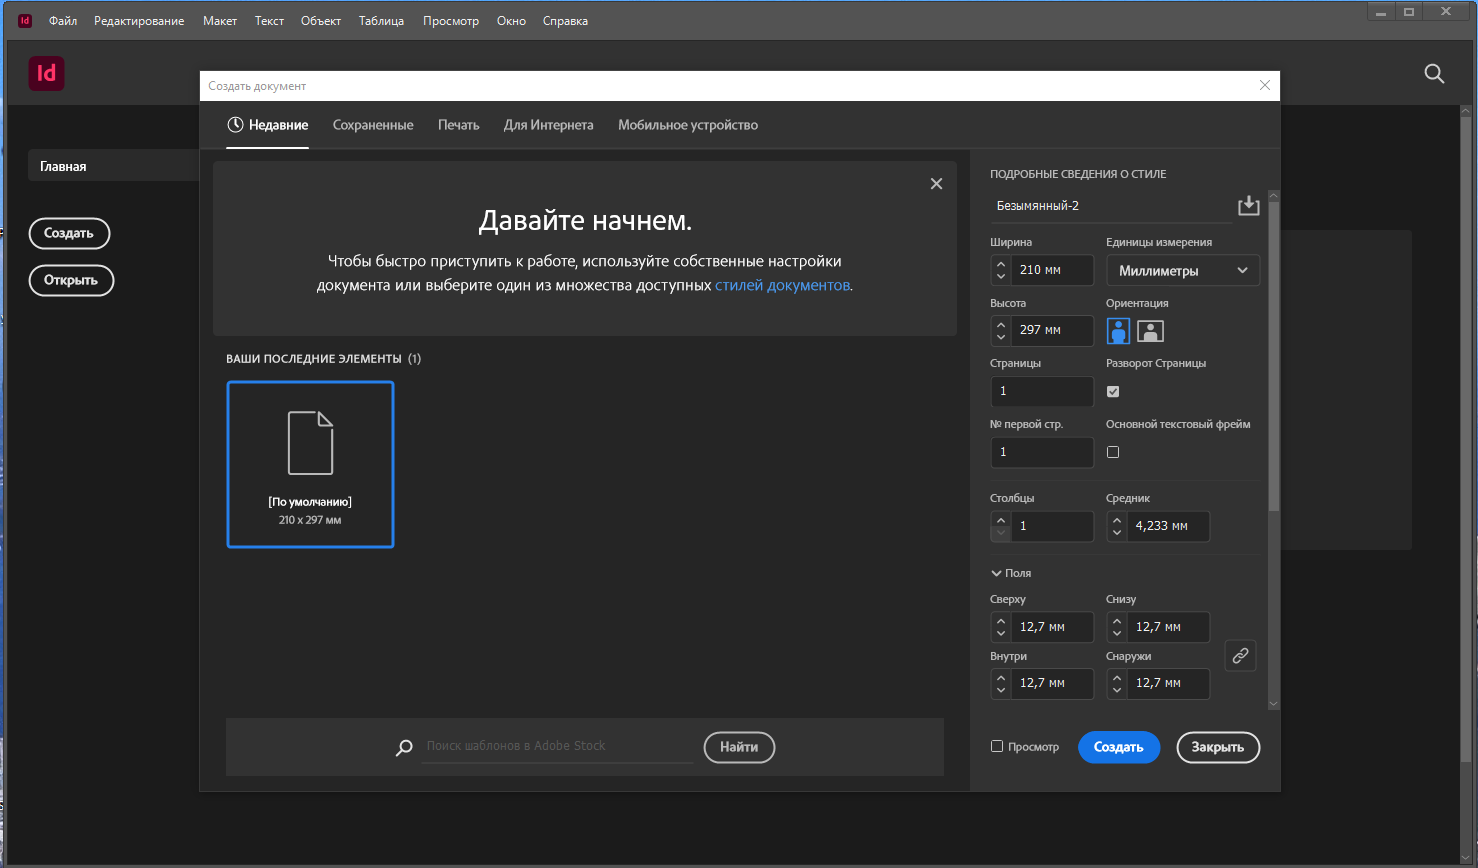 Adobe InDesign 2022 17.0.1.105 RePack by KpoJIuK [Multi/Ru]